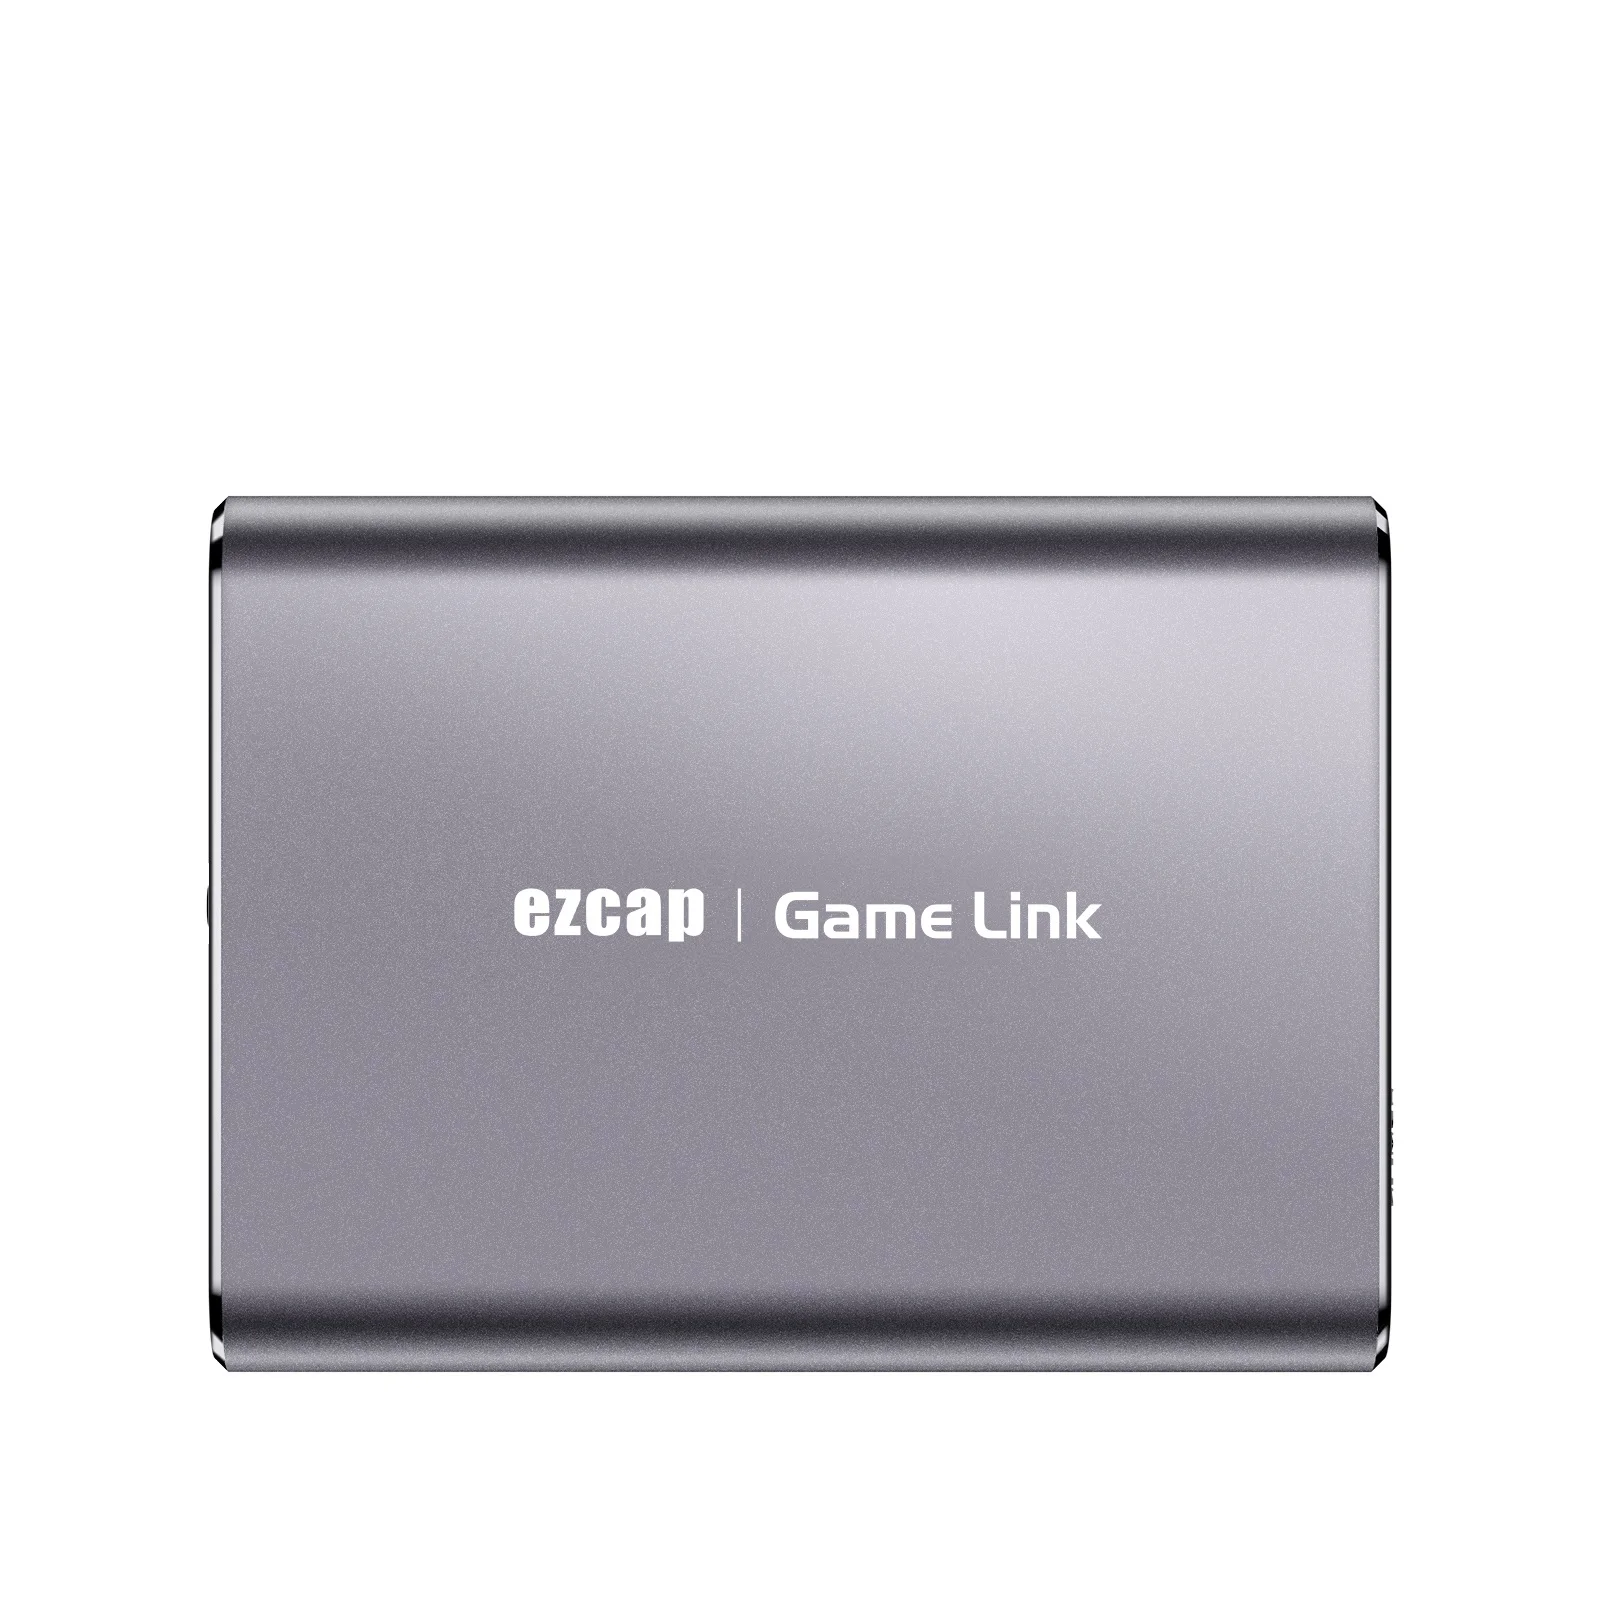 Ezcap311P 4K USB HDMI видеозахват 1080P60 живая трансляция захват игр | Безопасность и защита